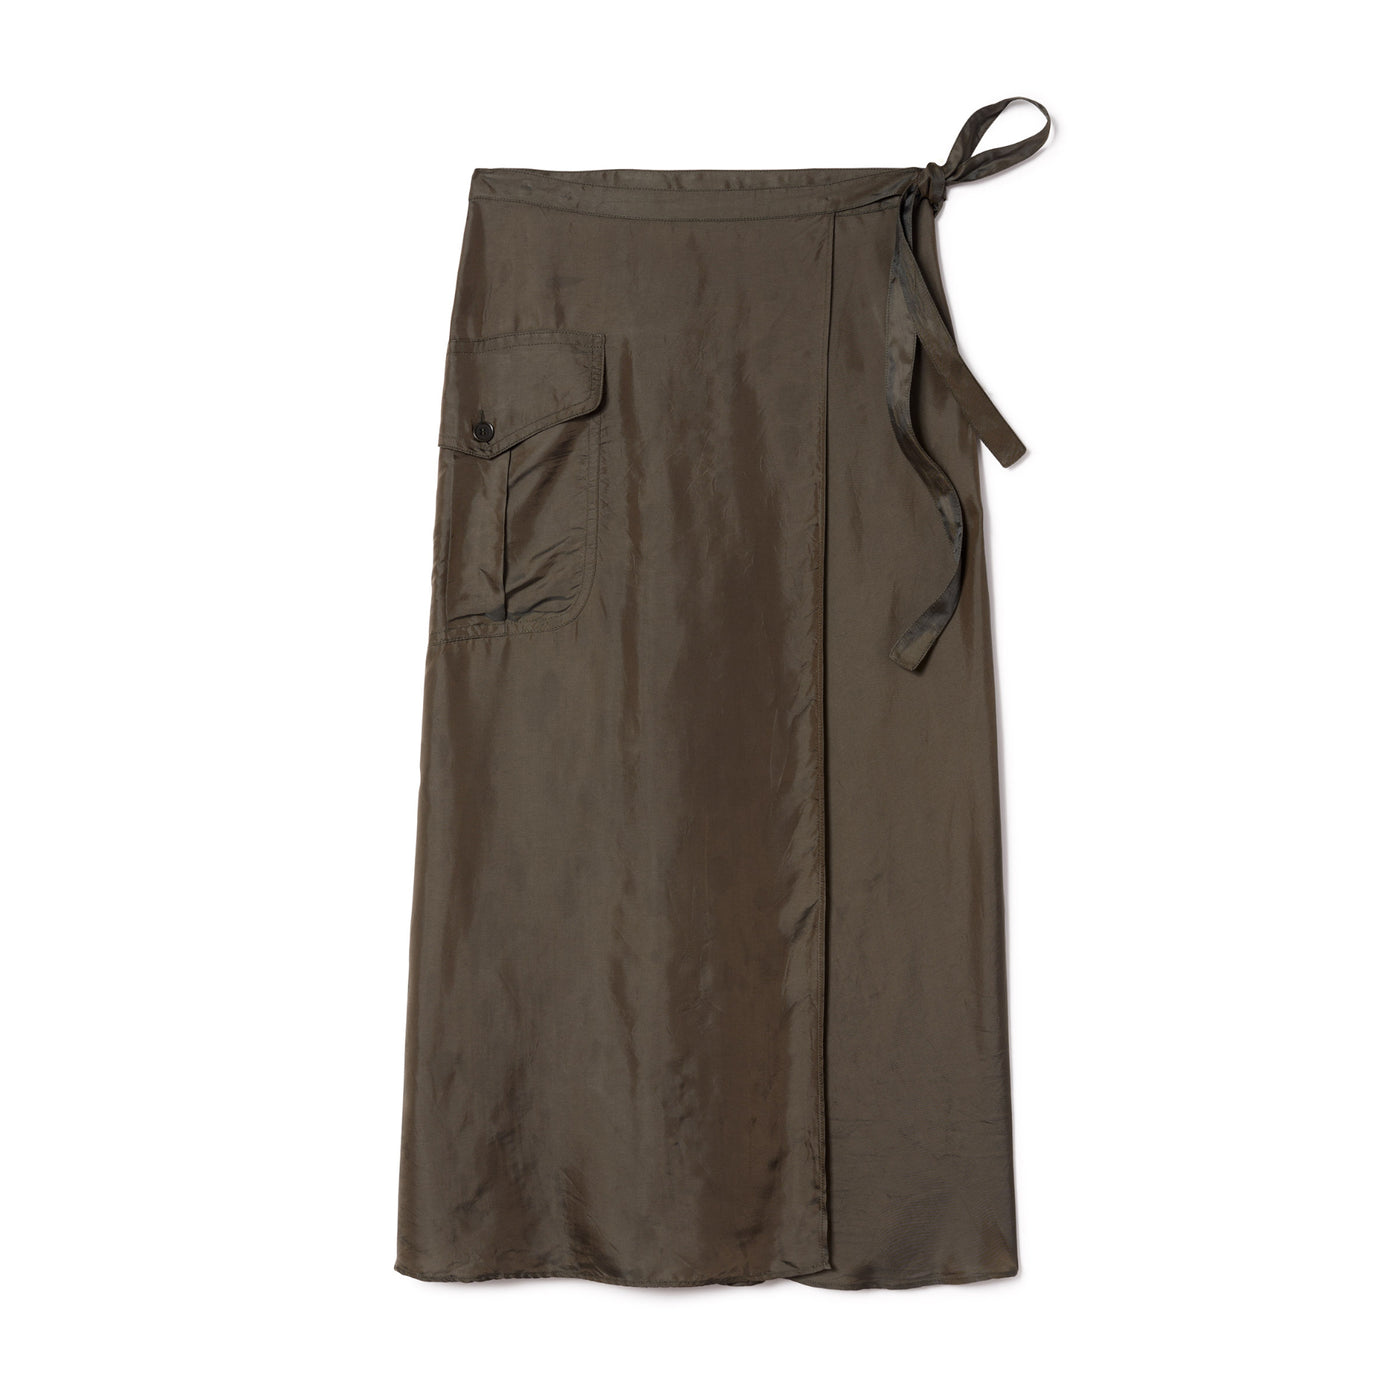 Women's Military One Pocket Skirt - Military Green